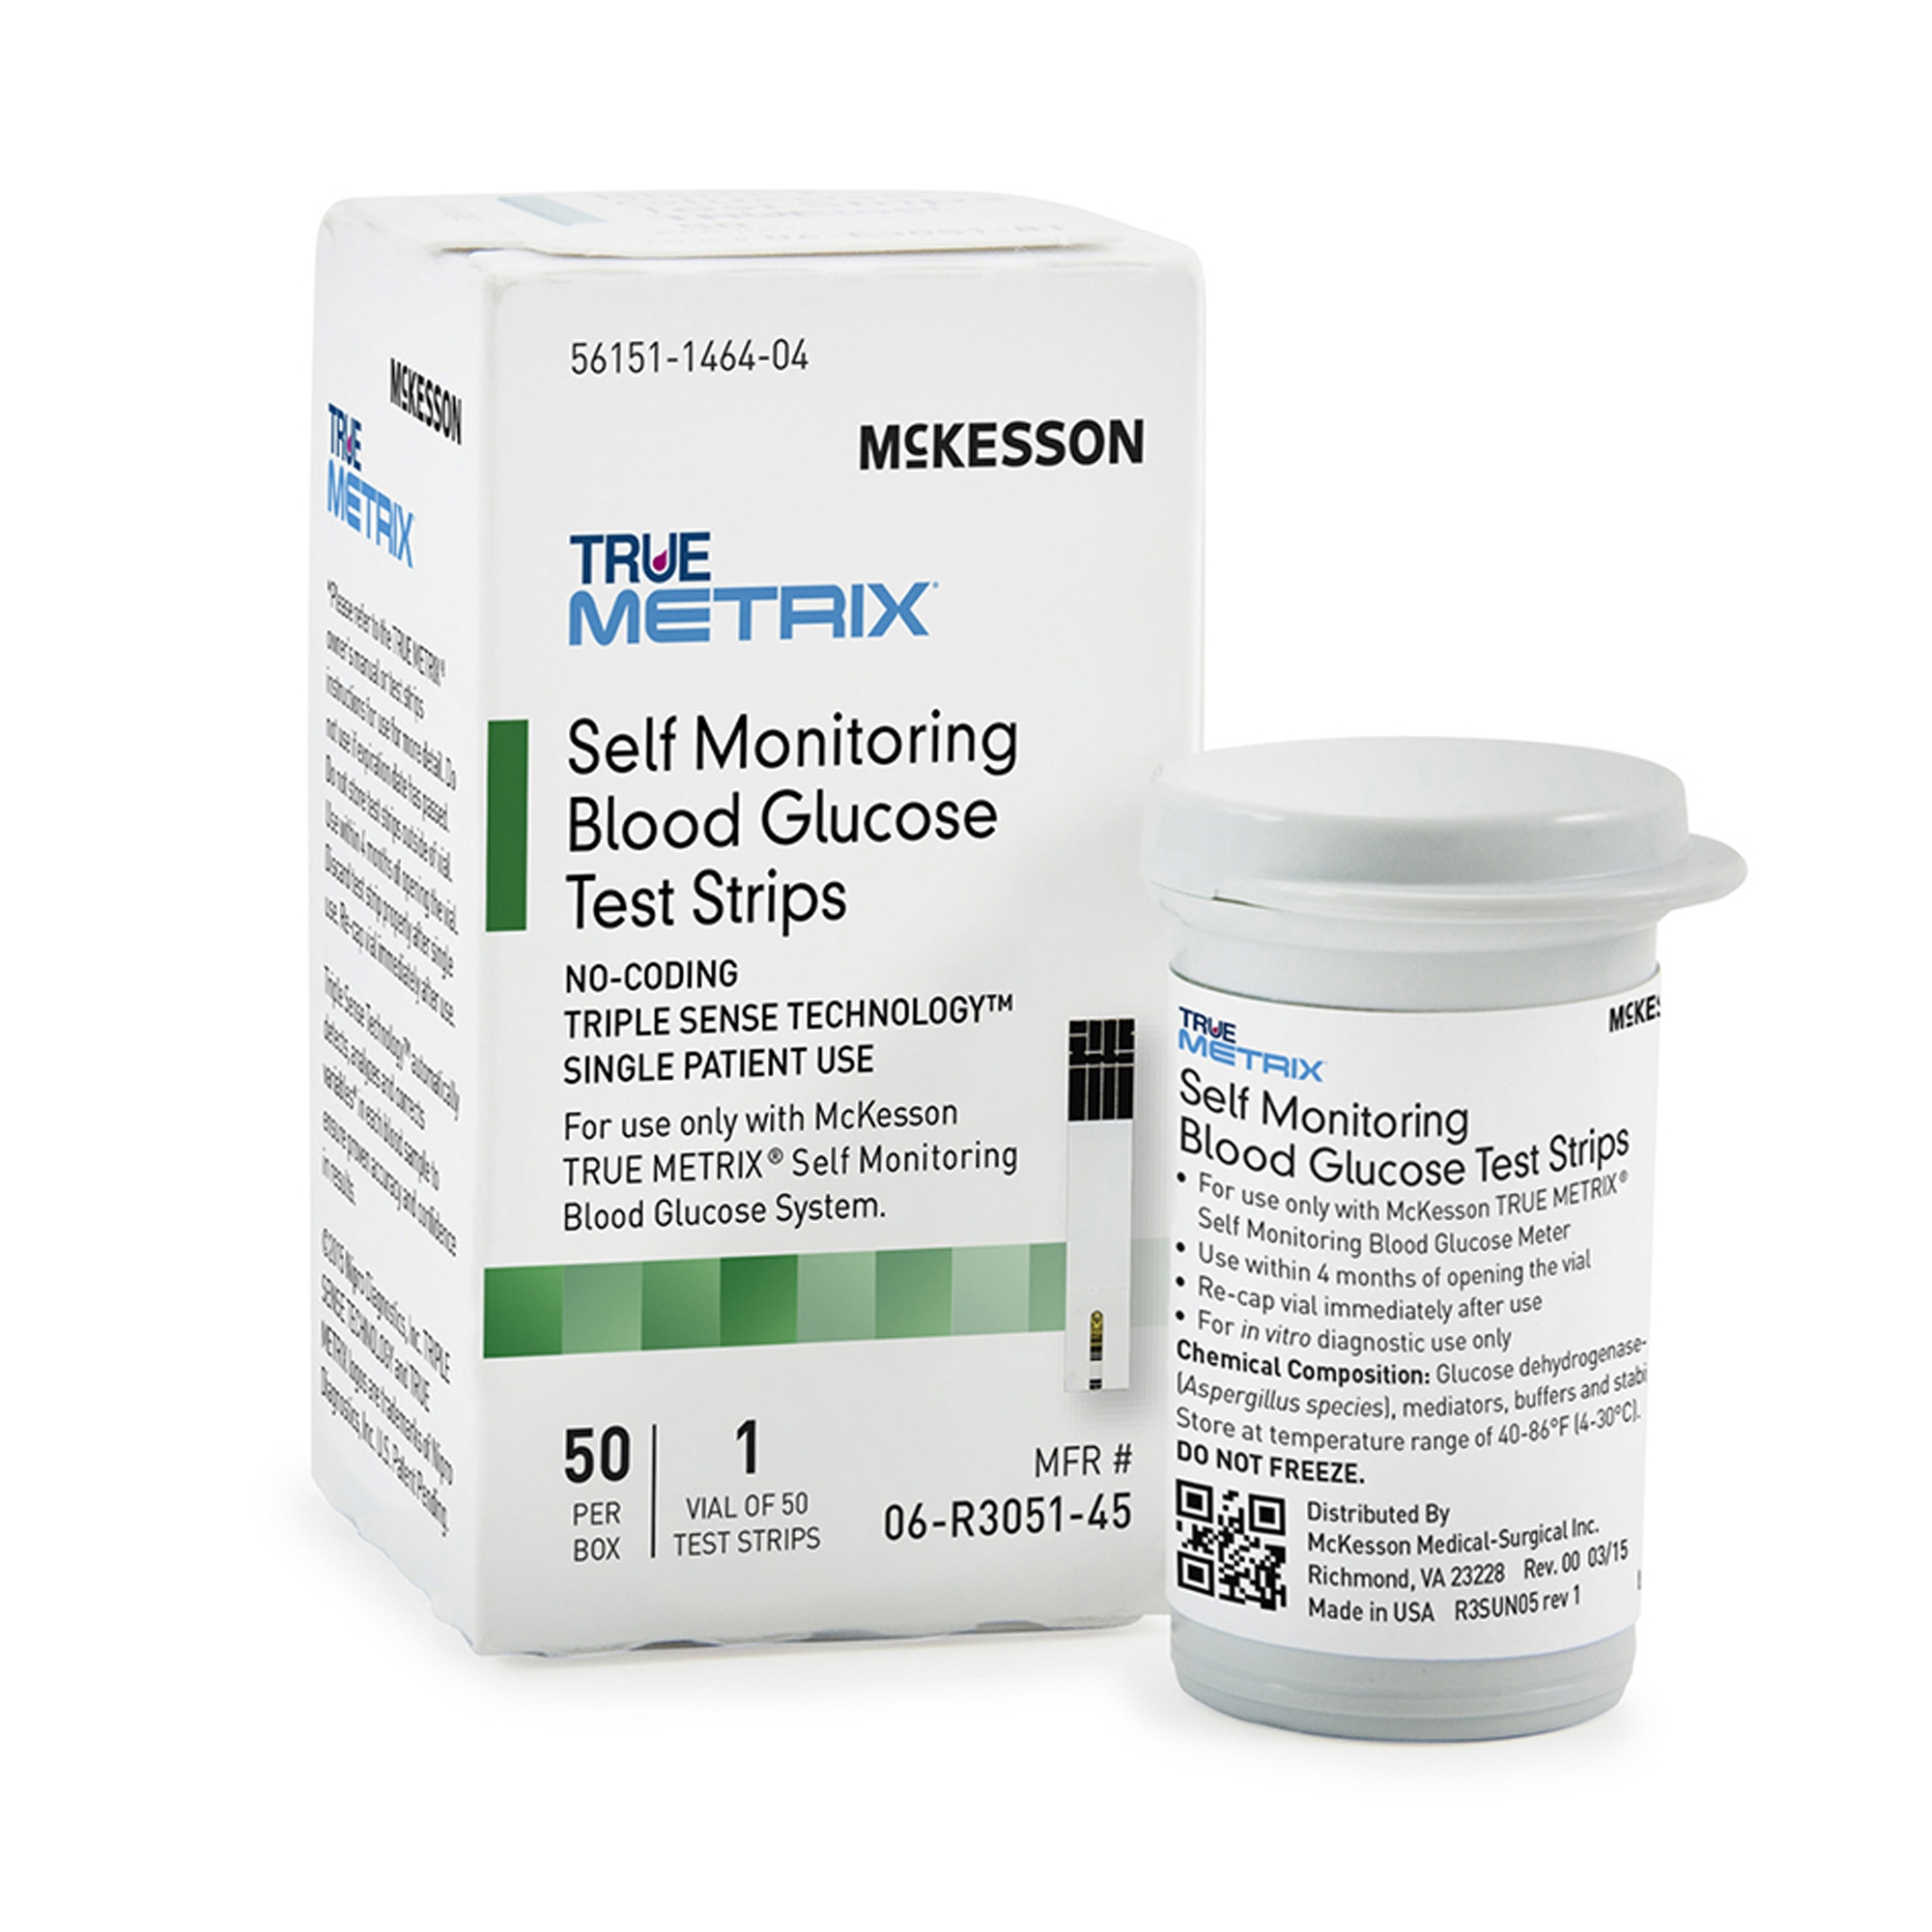 McKesson TRUE METRIX Blood Glucose Test Strips